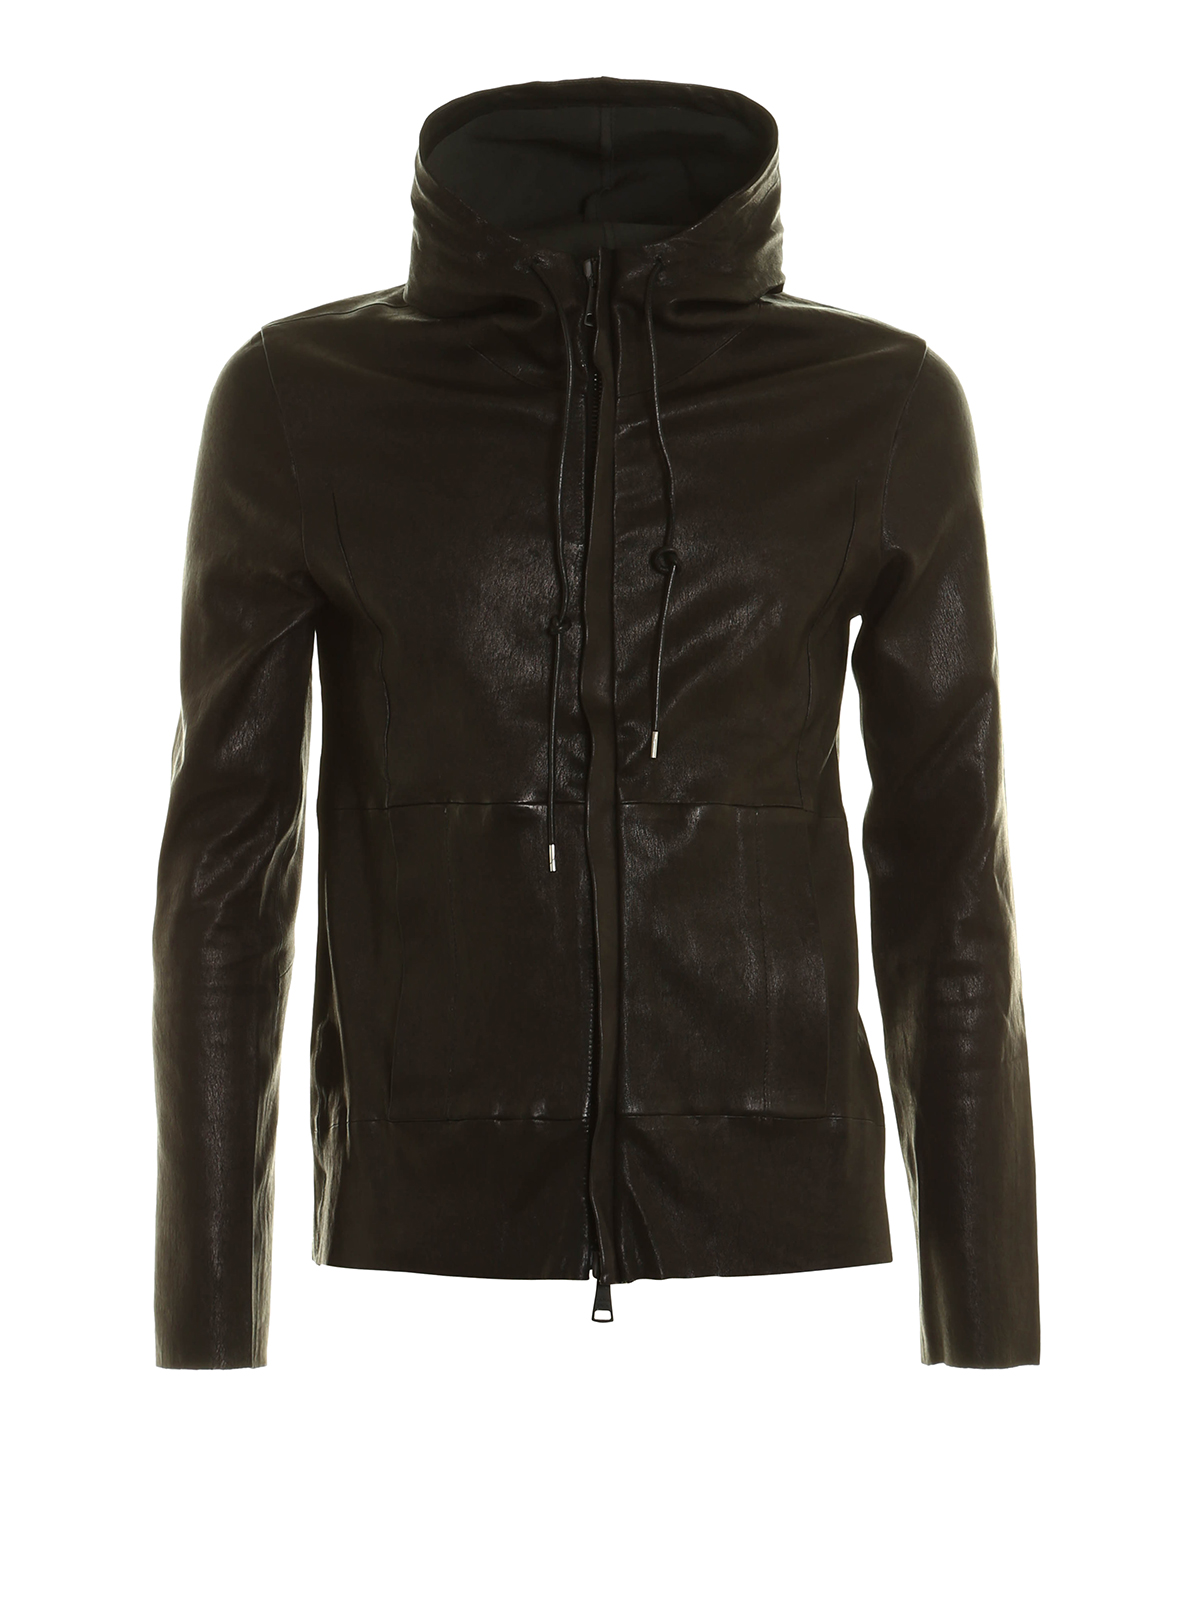 Leather jacket Giorgio Brato - Stretch leather jacket - GU17S8211STR